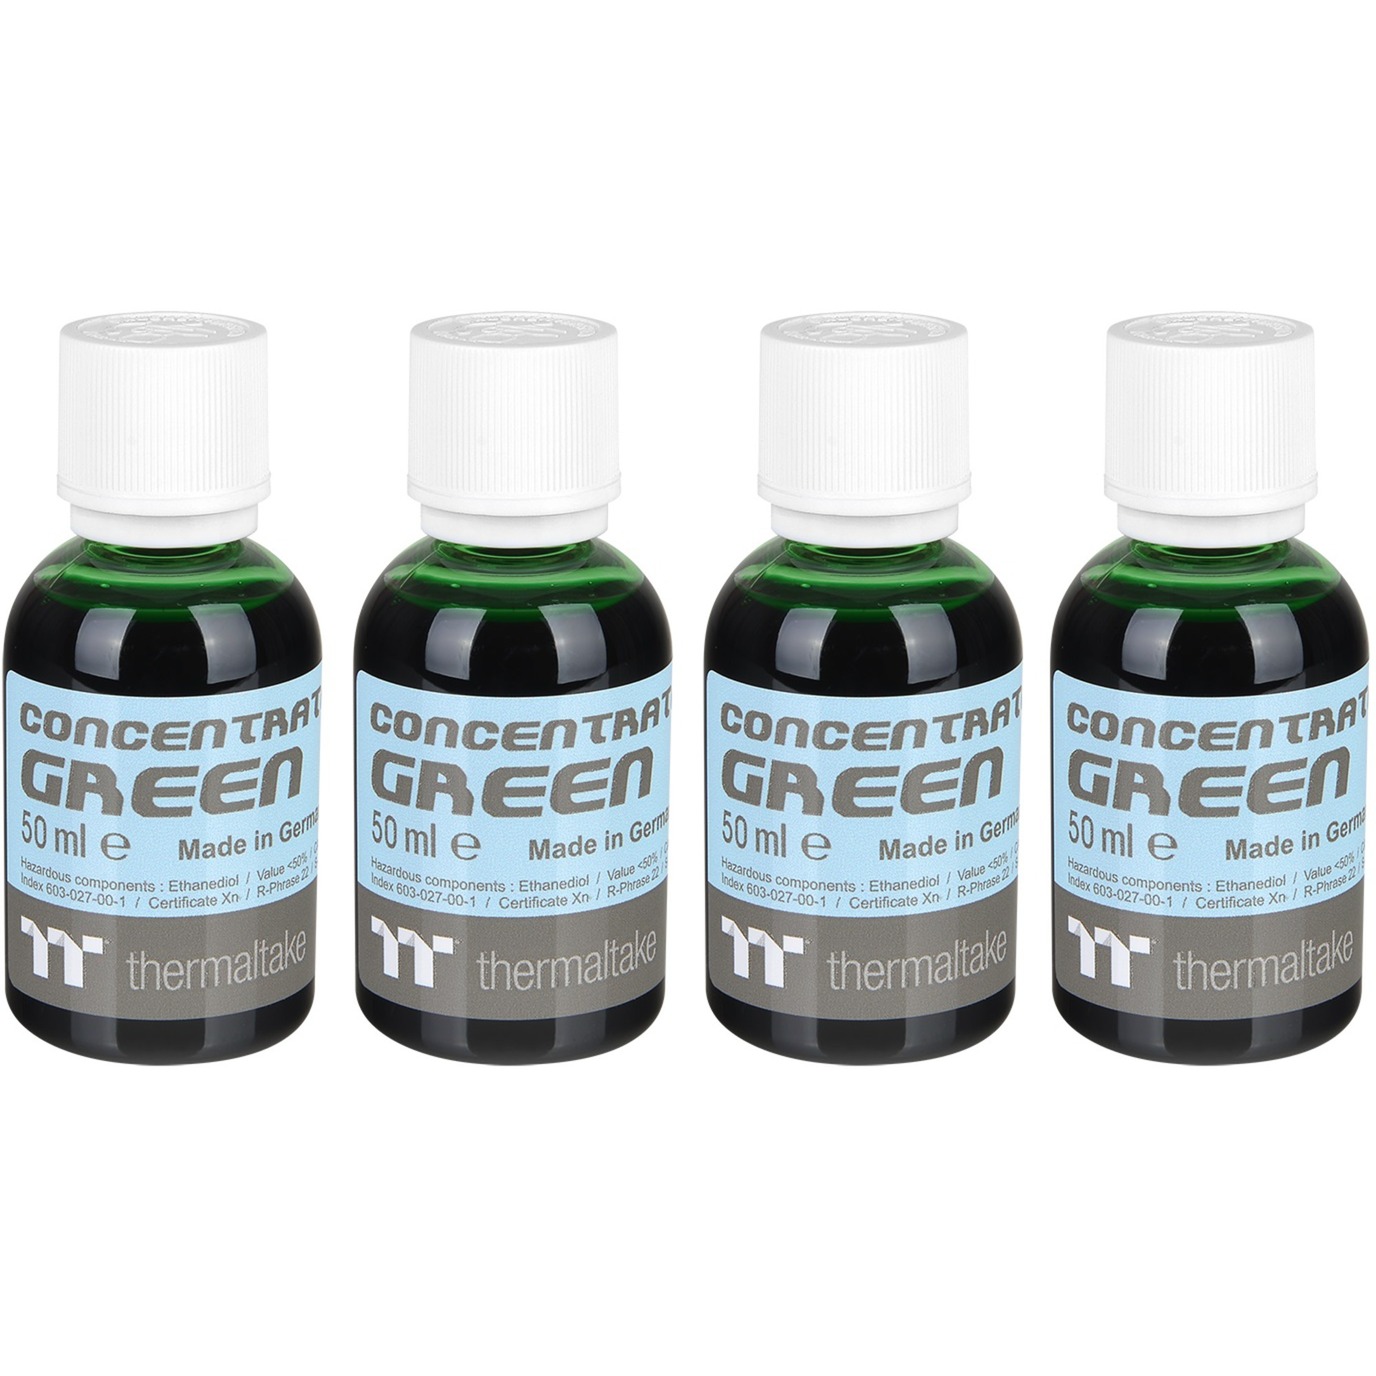 Image of Alternate - Premium Concentrate - Green (4 Bottle Pack), Kühlmittel online einkaufen bei Alternate